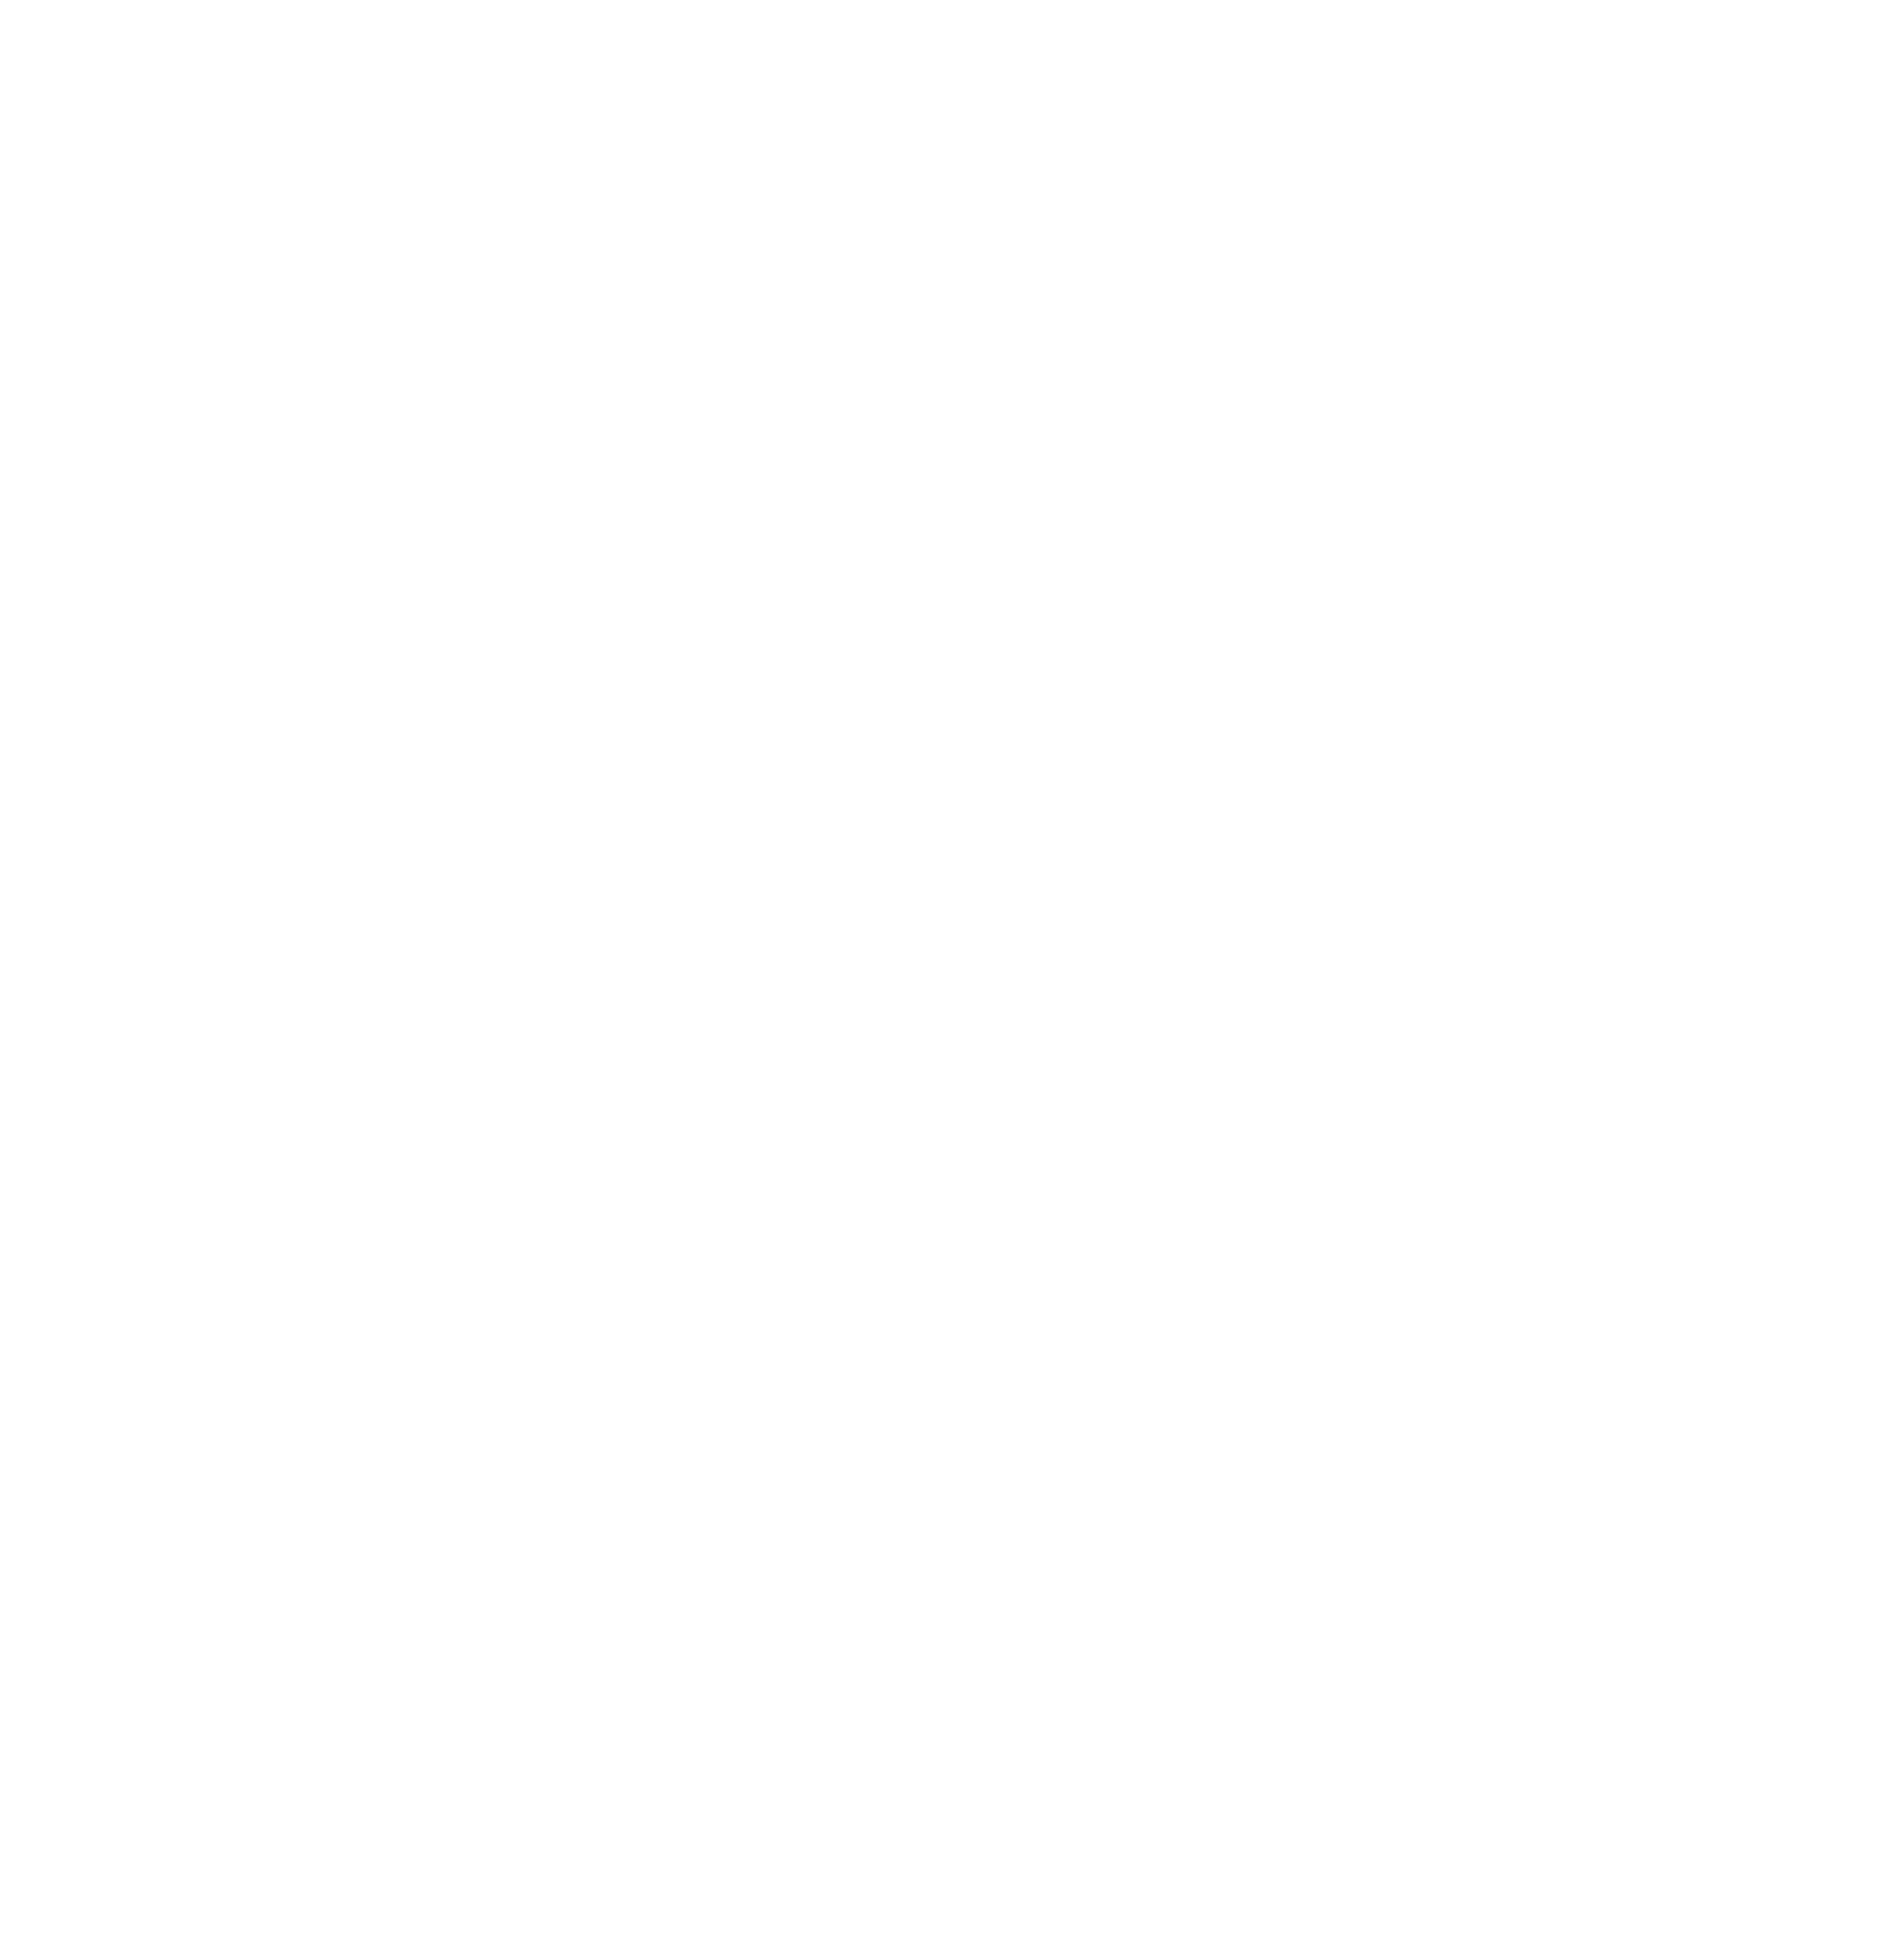 WorkPlace logo